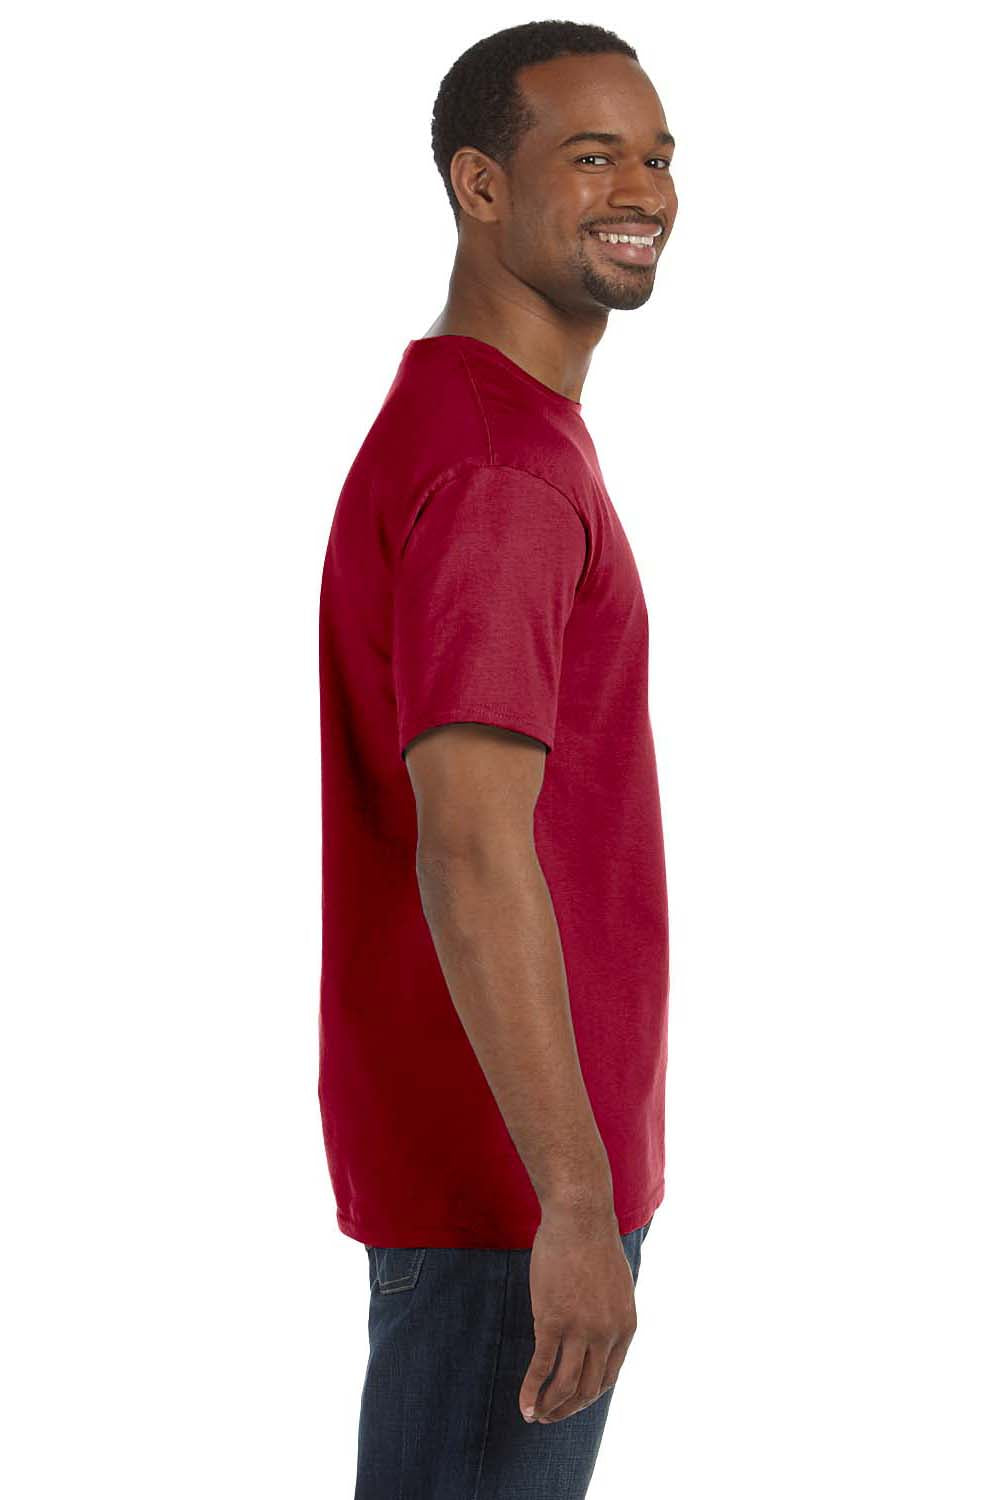 Jerzees 29M Mens Dri-Power Moisture Wicking Short Sleeve Crewneck T-Shirt Cardinal Red Side